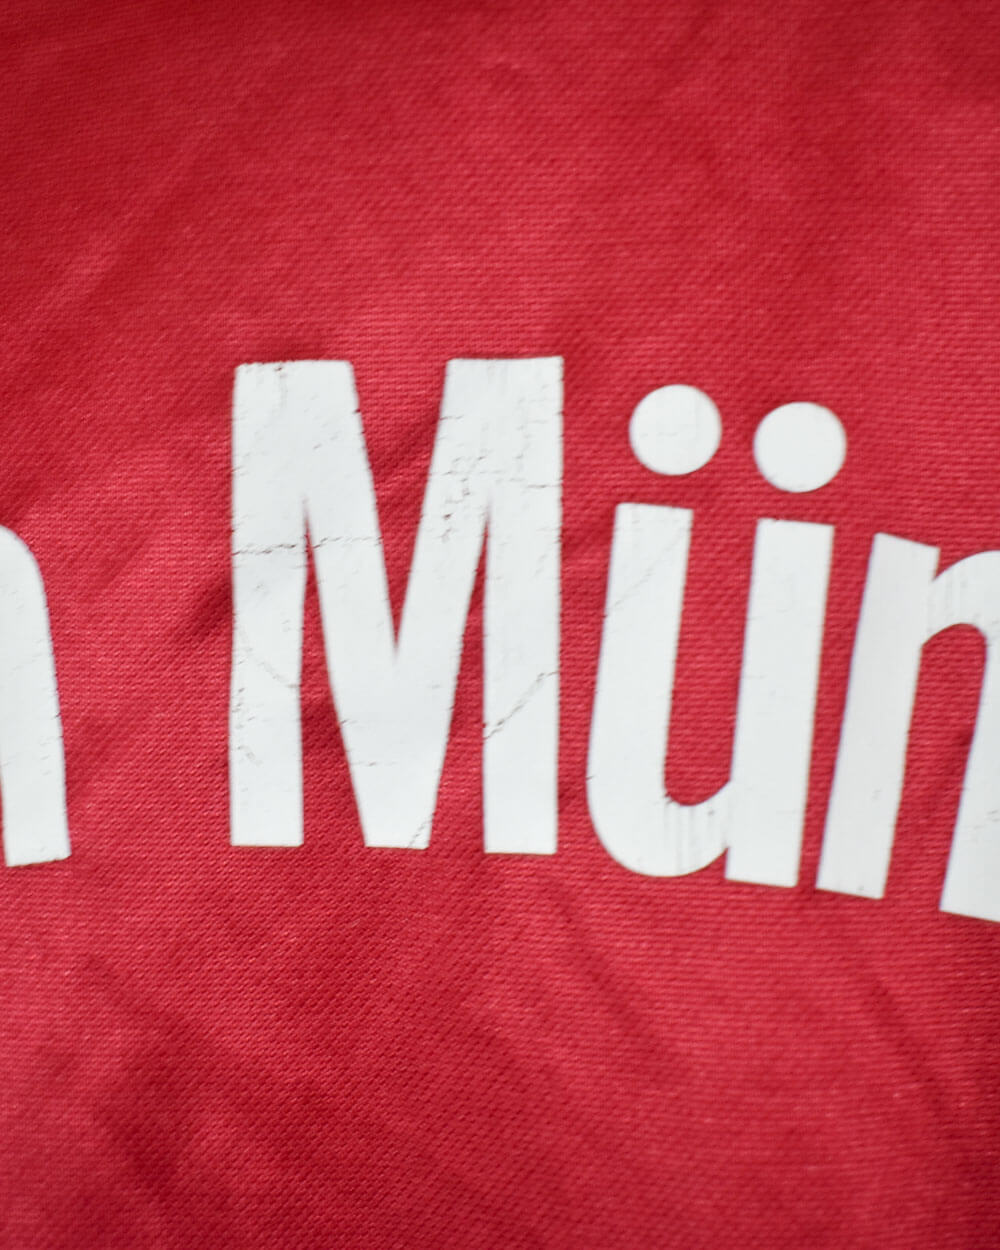 Red Adidas Bayern Munich 2003/04 Home Football Shirt - Small